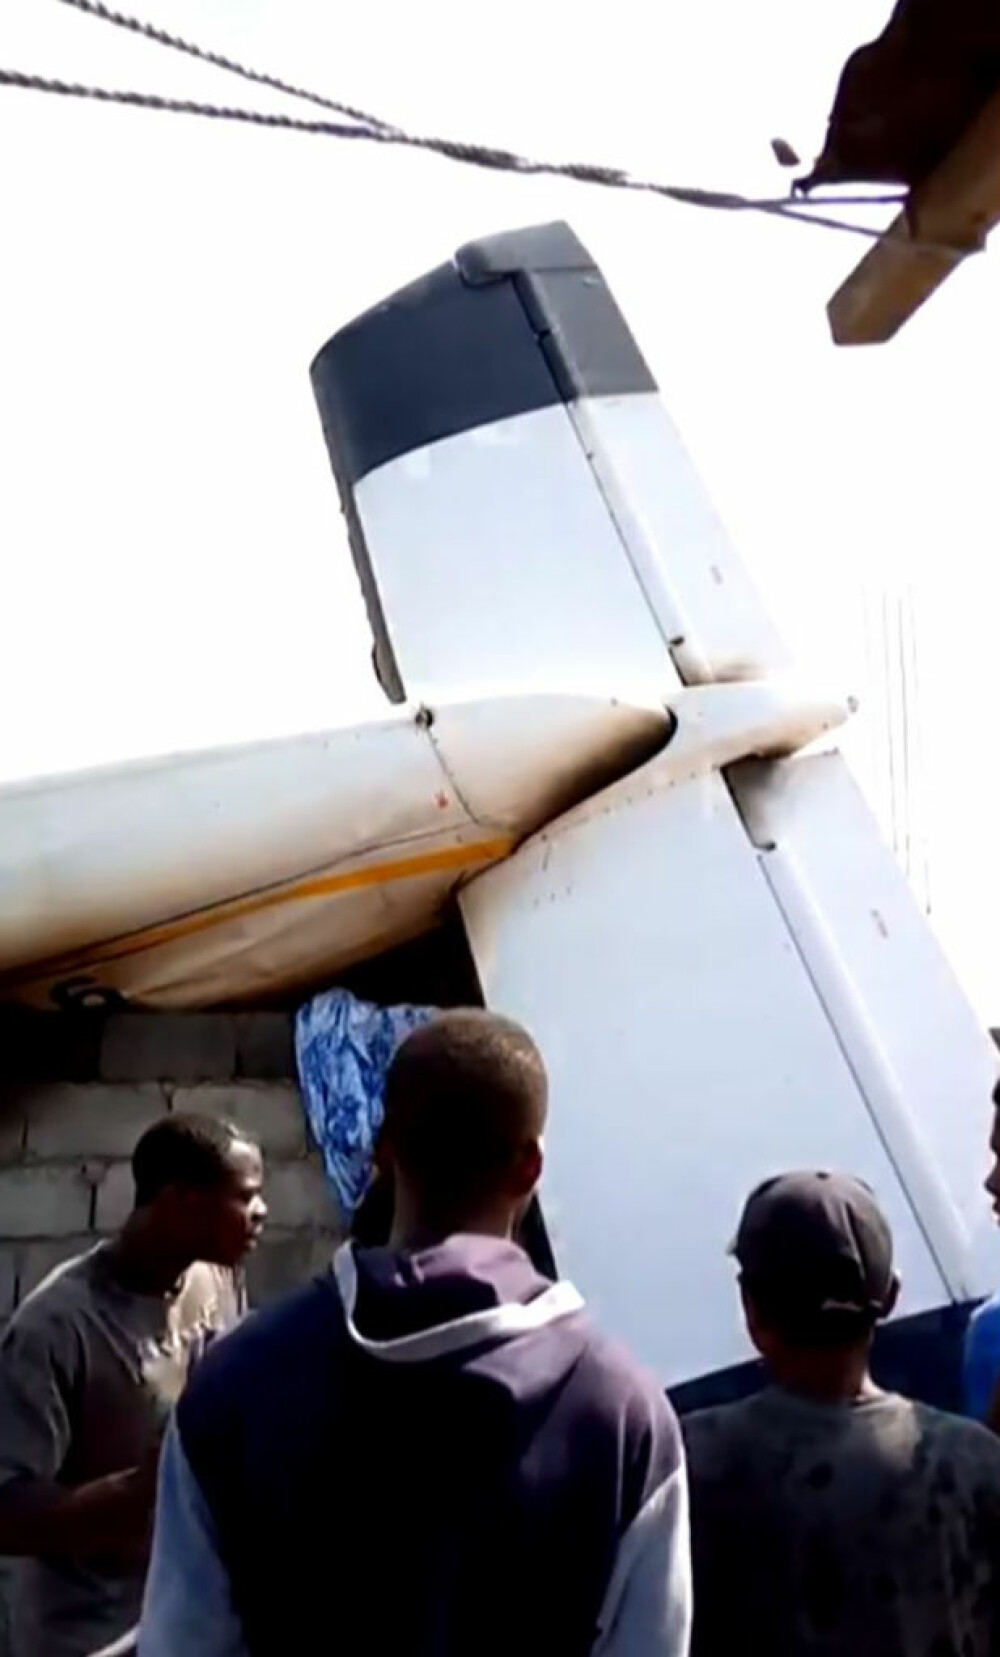 Tragedie aviatică în Congo. 17 persoane aflate la bordul unui avion au murit - Imaginea 2